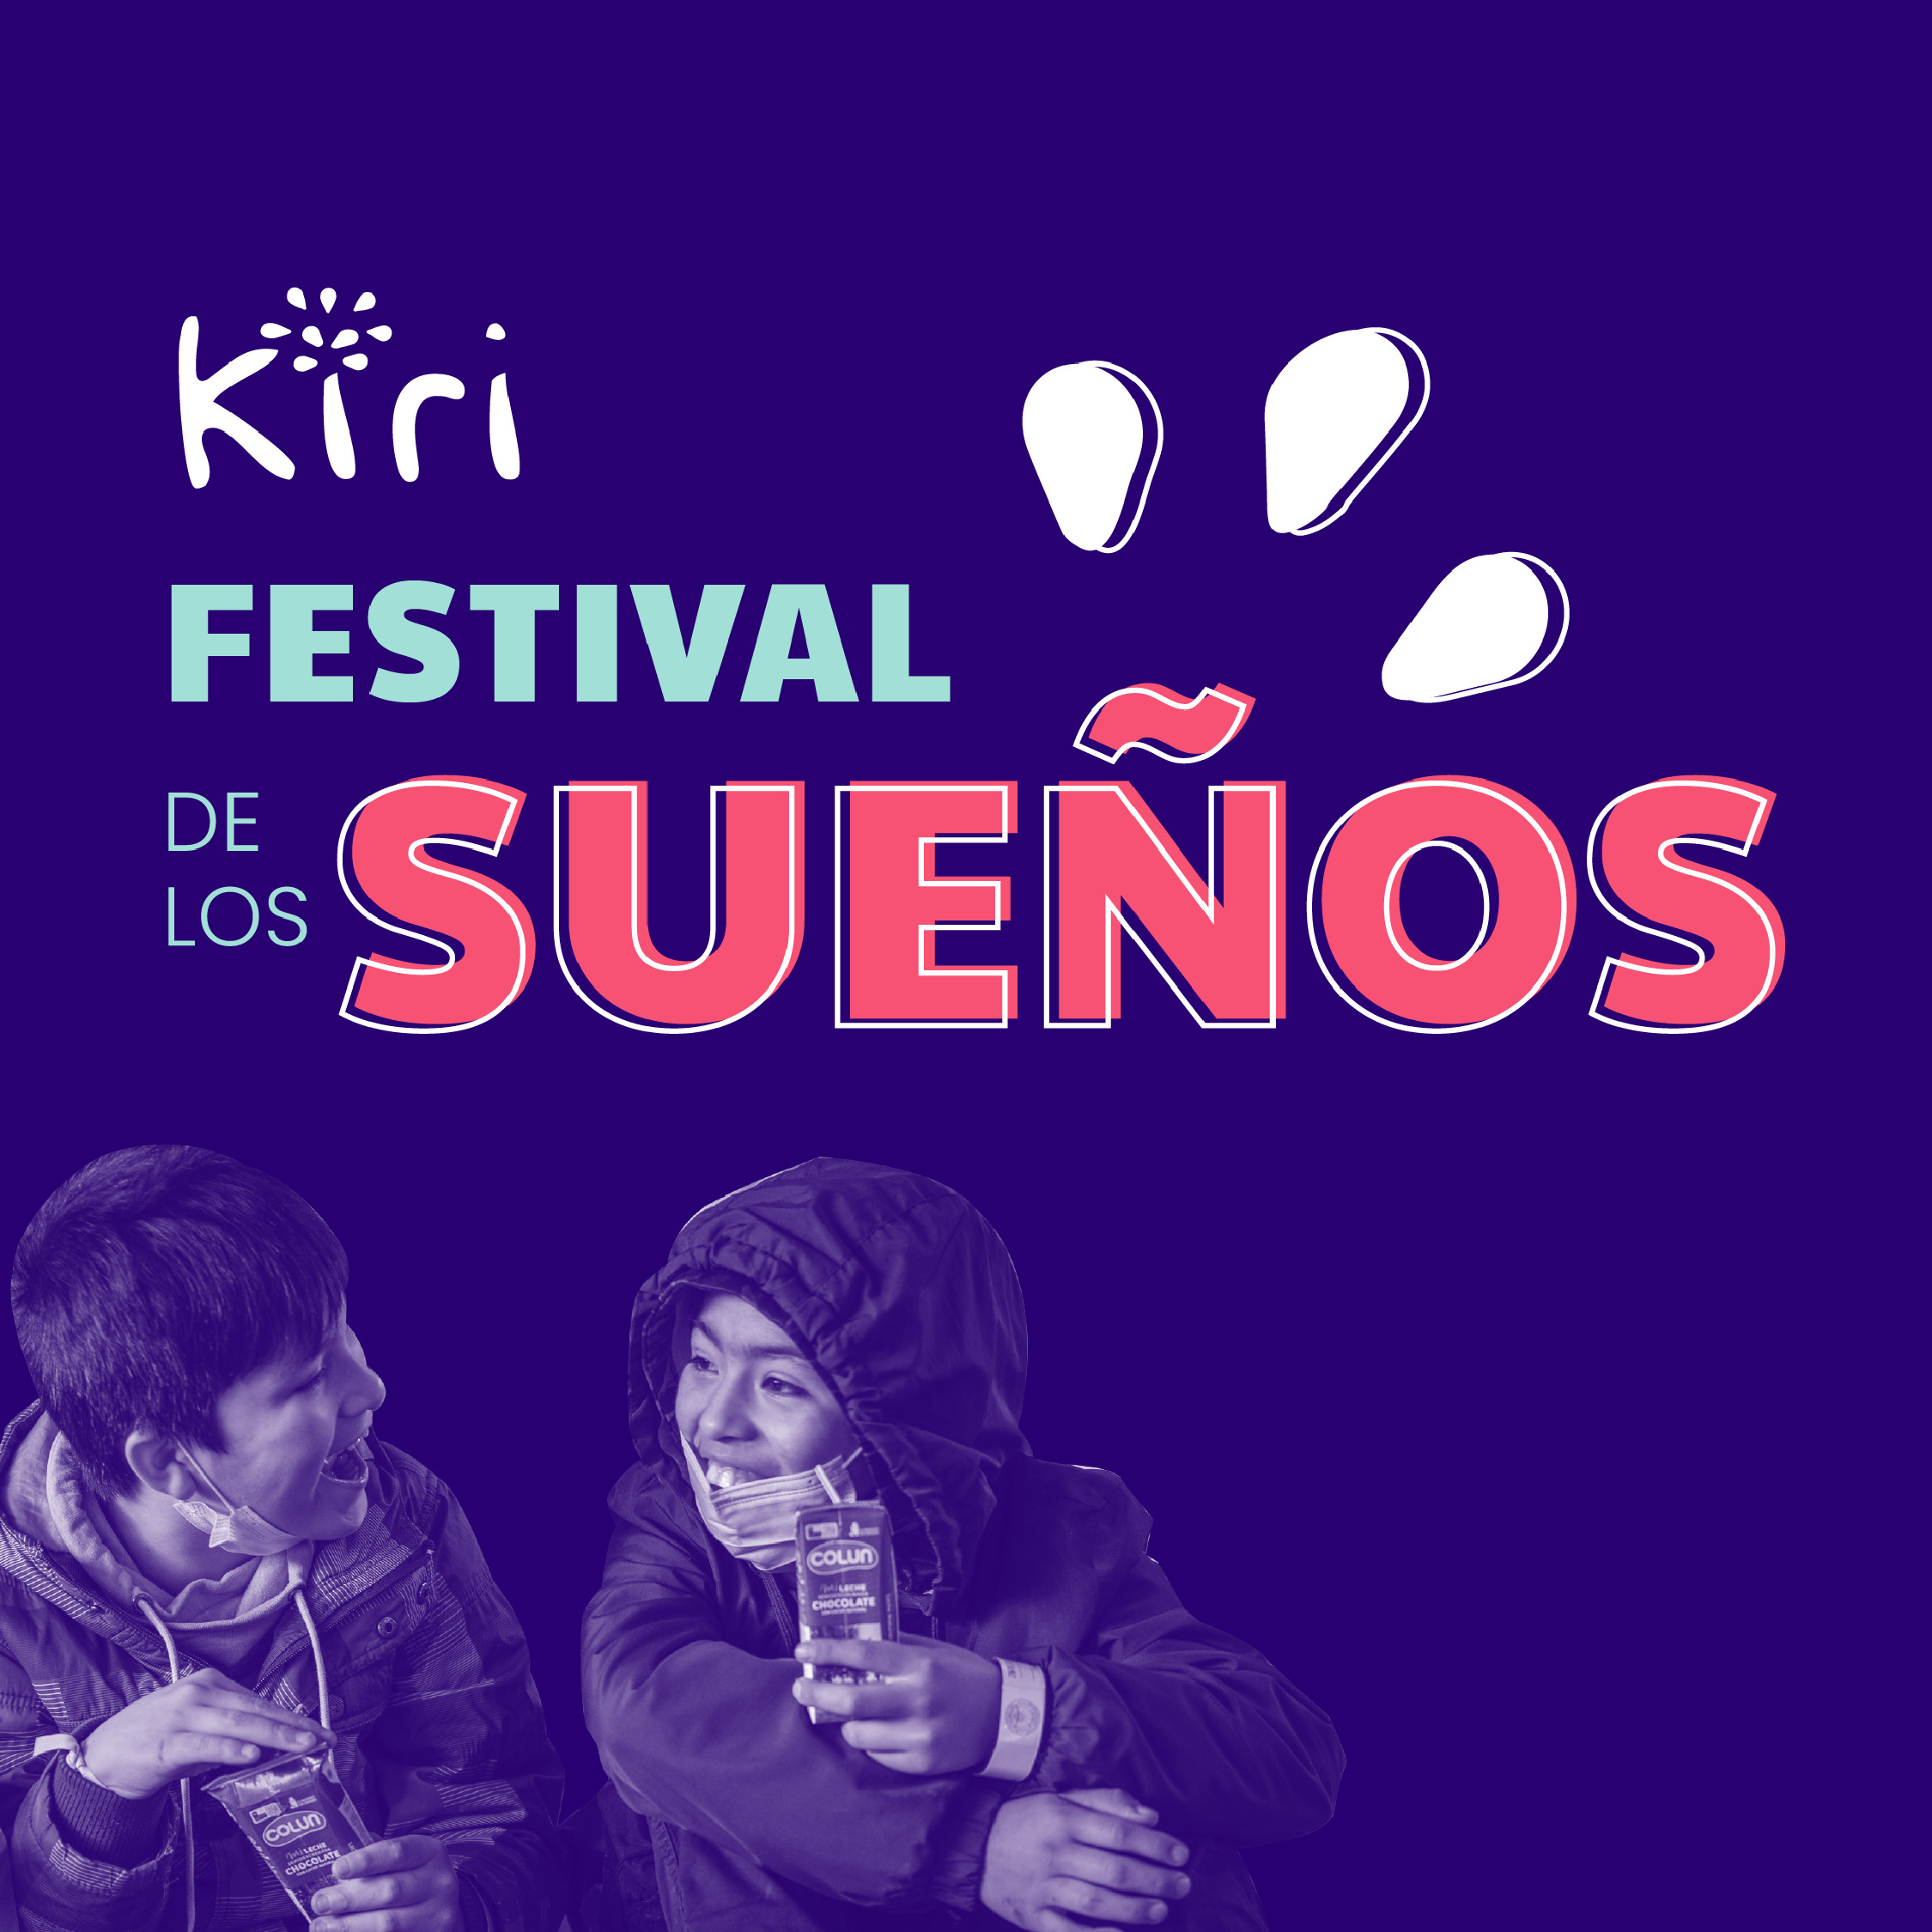 Featured image for “Festival de los sueños convocará a 400 estudiantes de la Región Metropolitana”